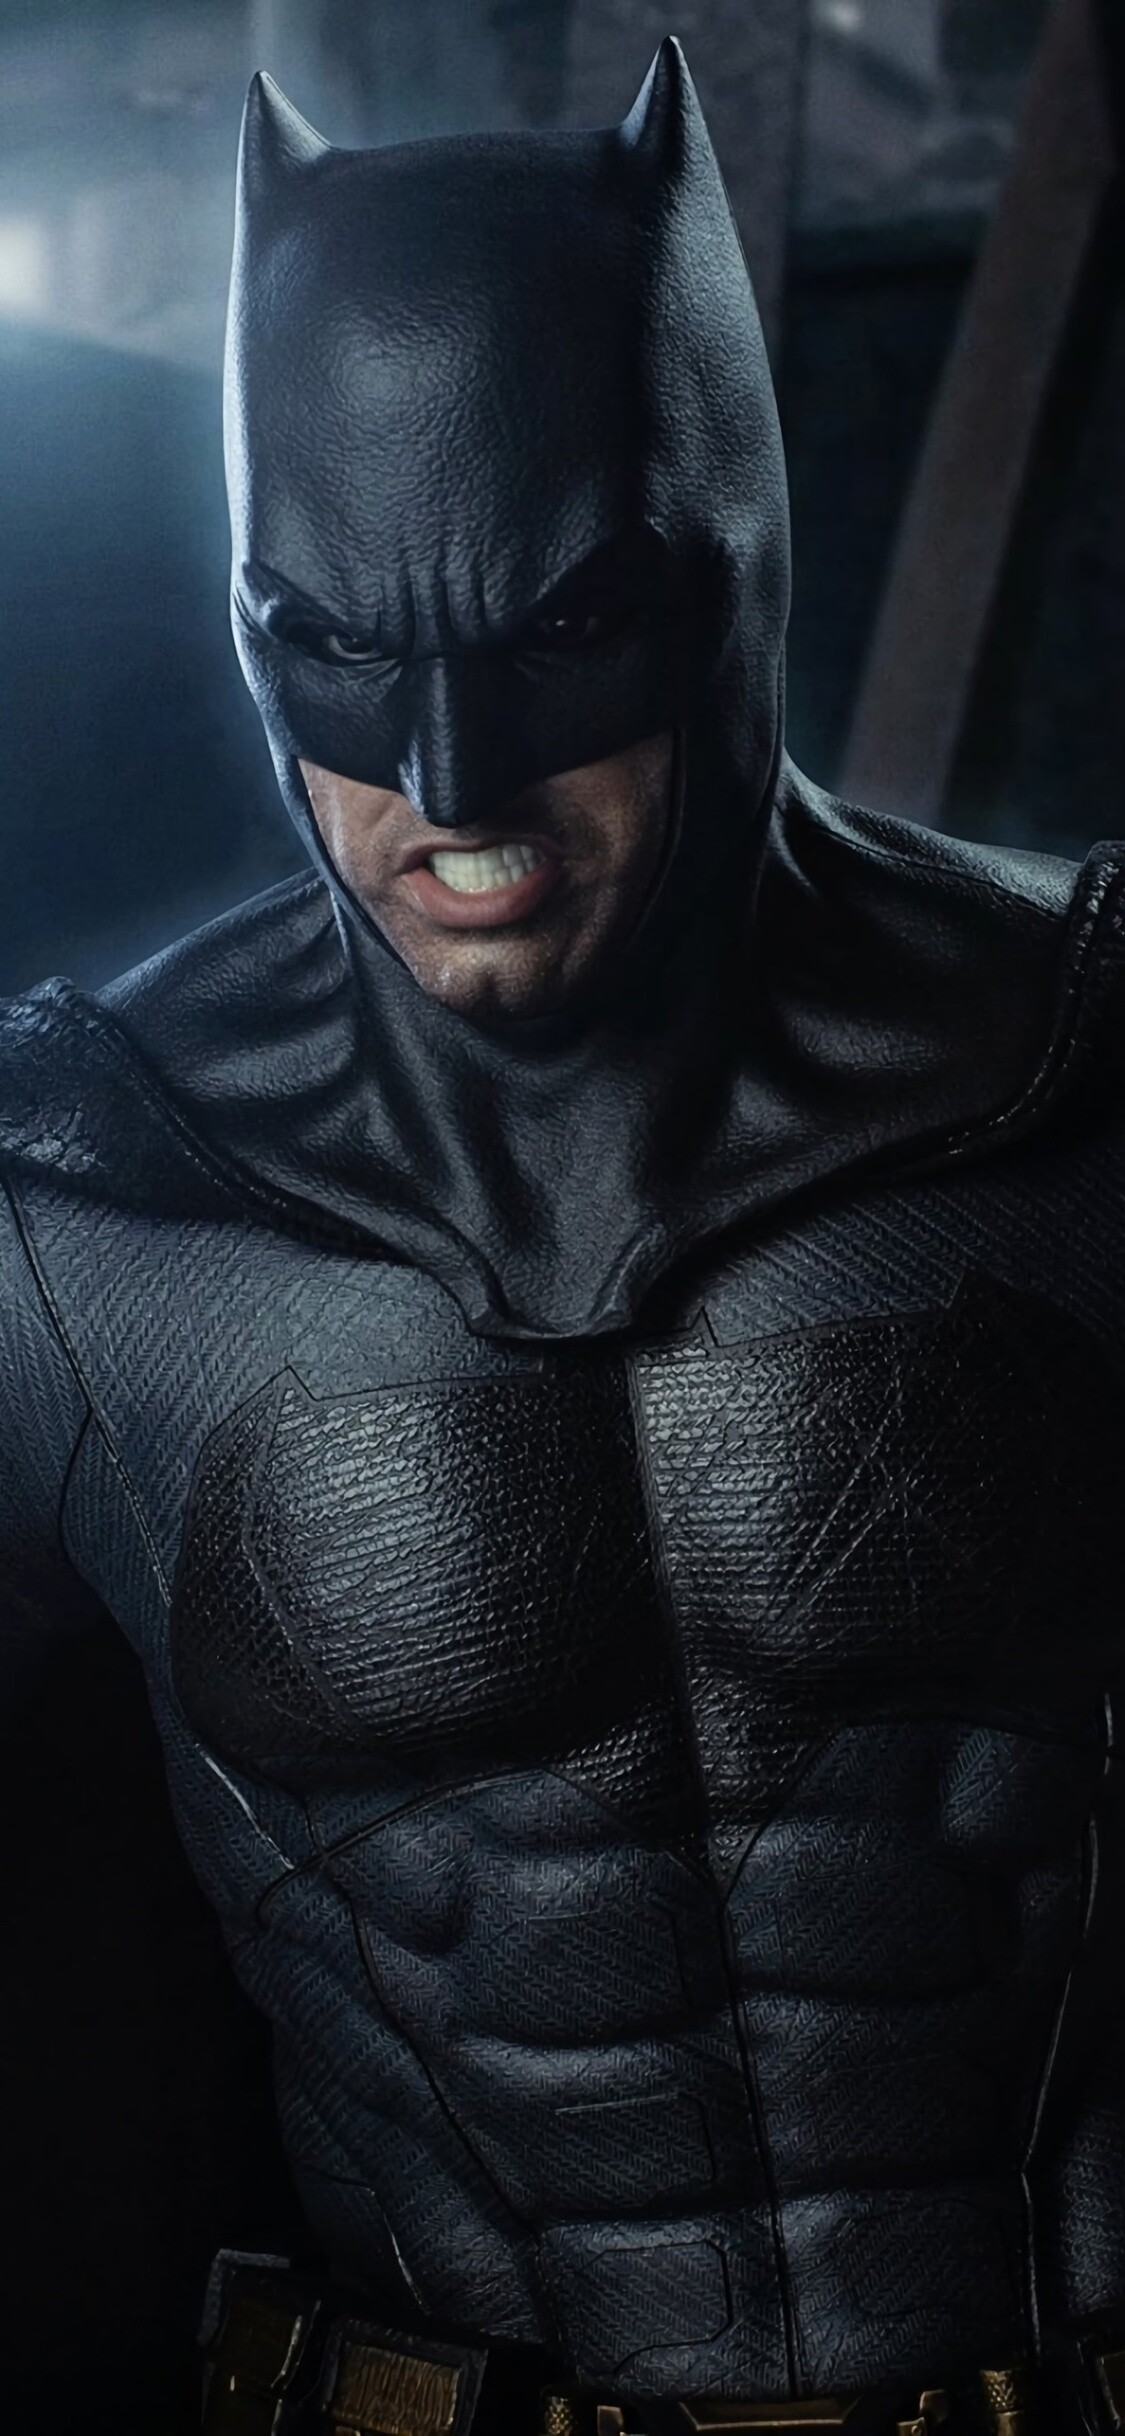 Ben Affleck: Batman, Action film, DCEU, Superhero. 1130x2440 HD Wallpaper.